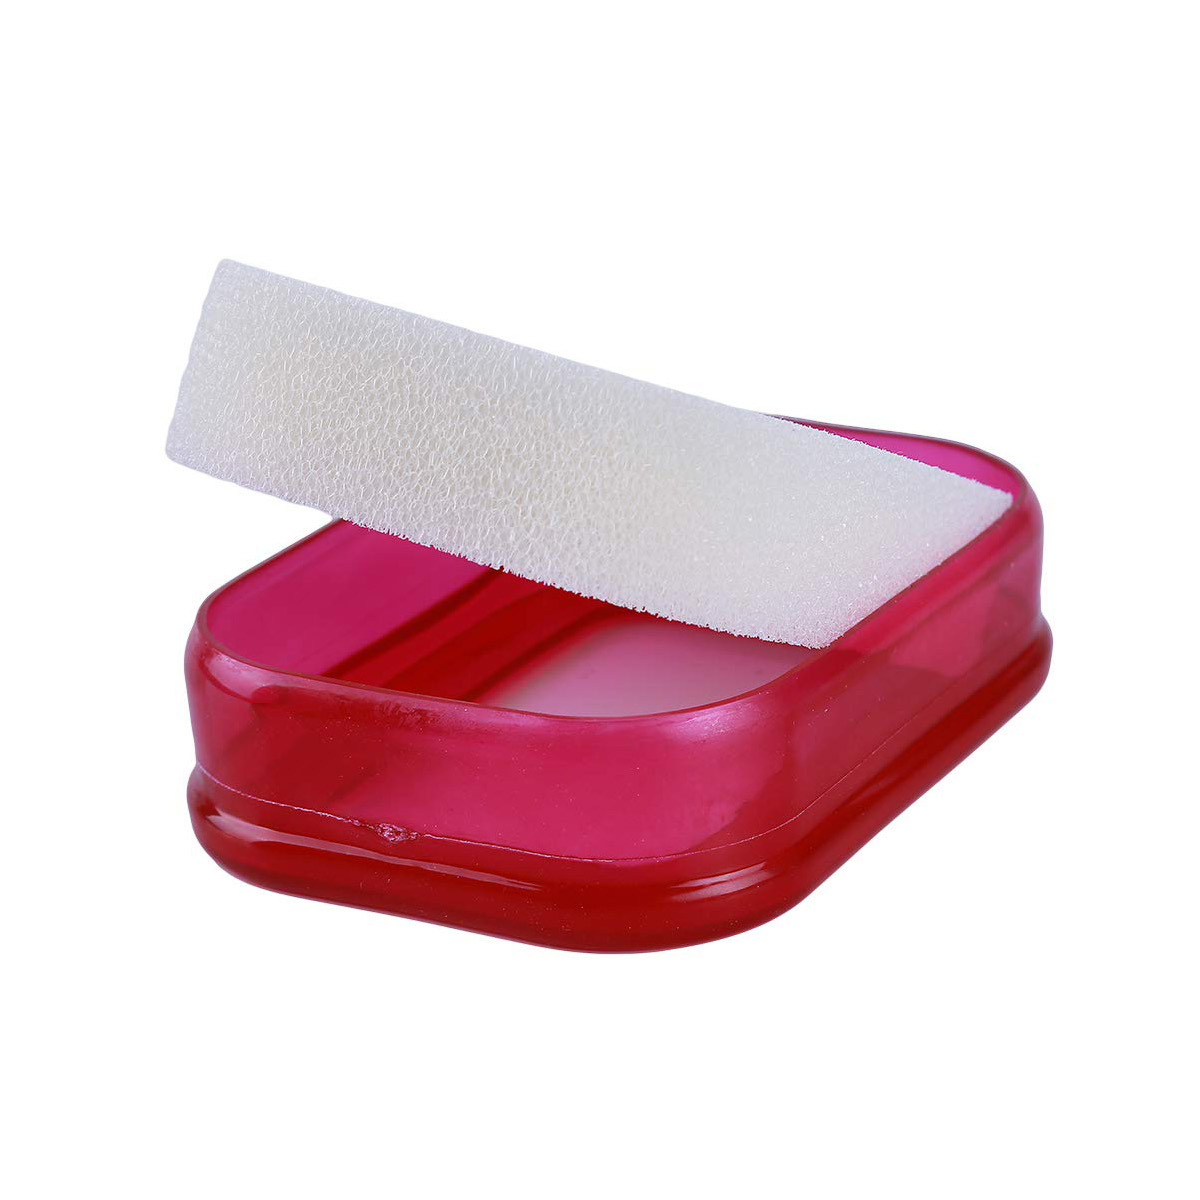 Мультифункциональная губка мыльница в силиконовой коробке, красный, BH-ASH-01